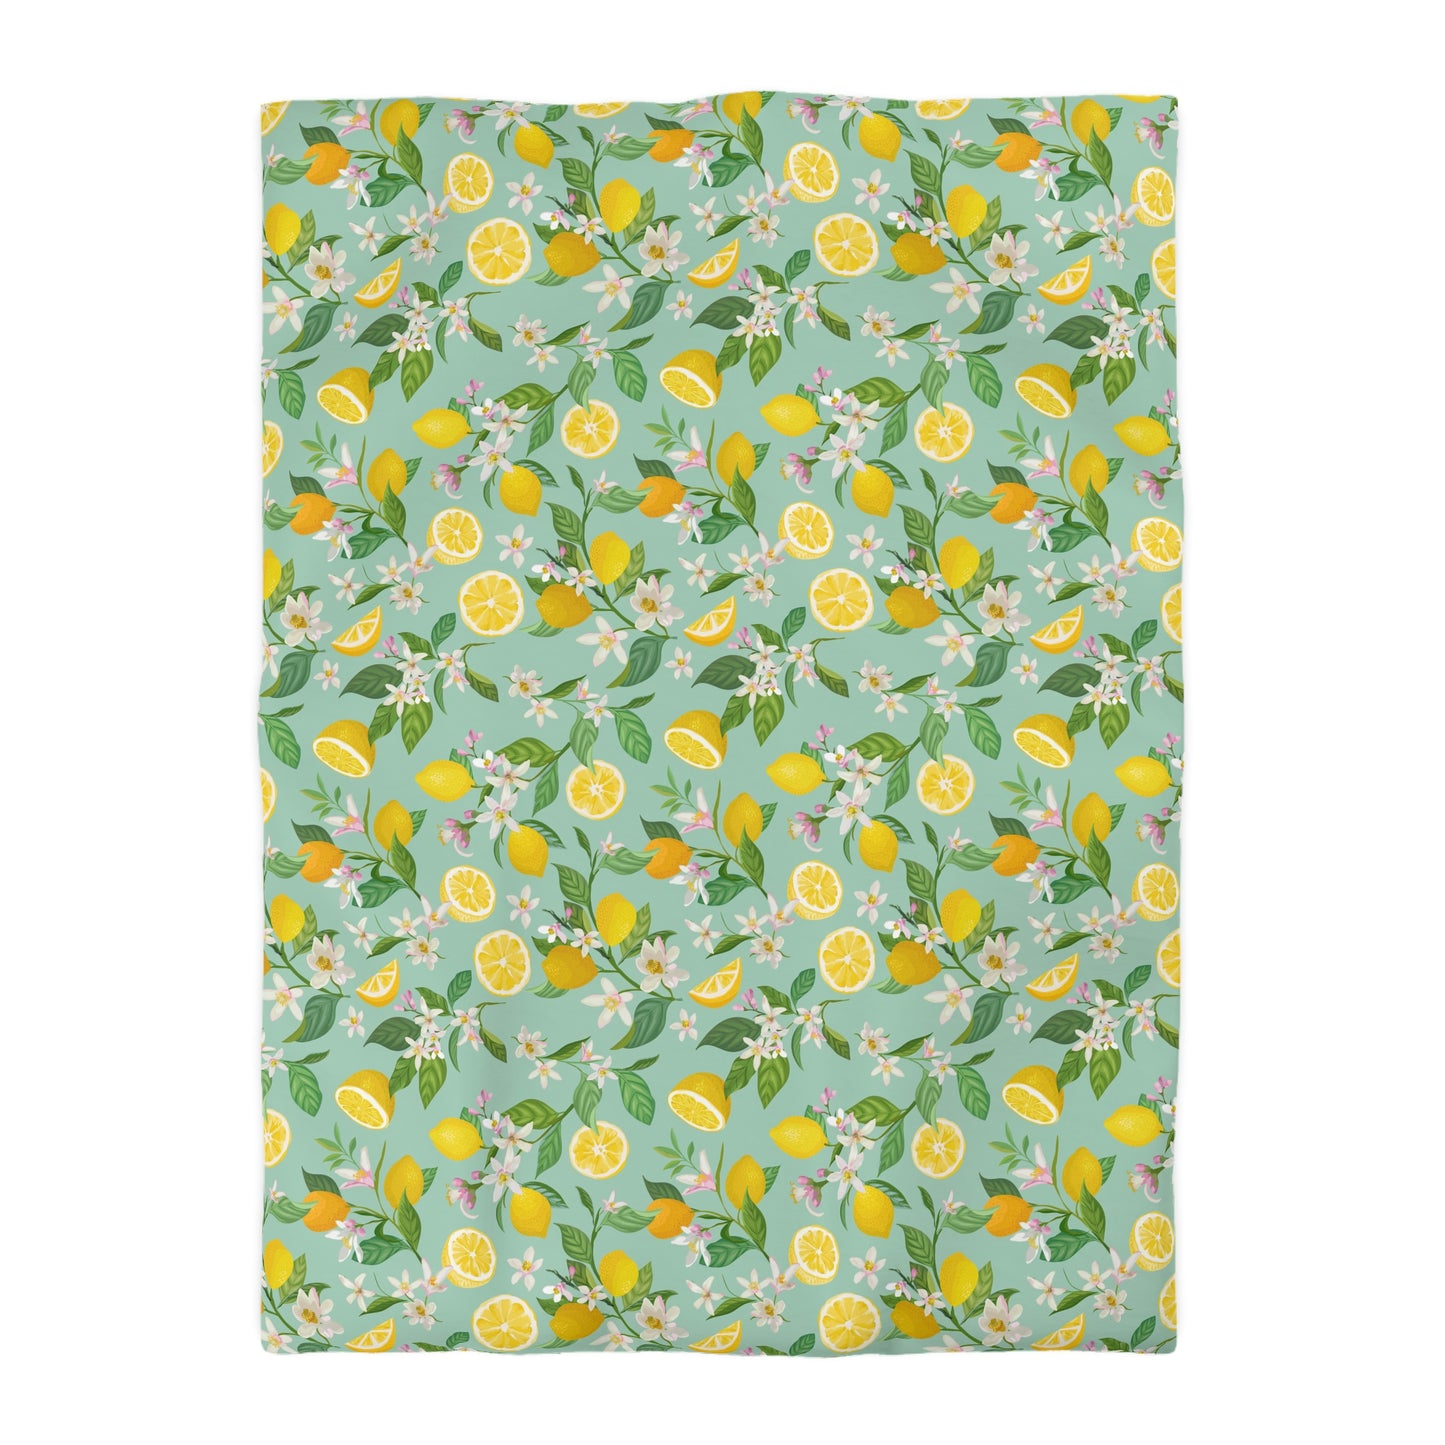 Lemons and Flowers Microfiber Duvet Cover